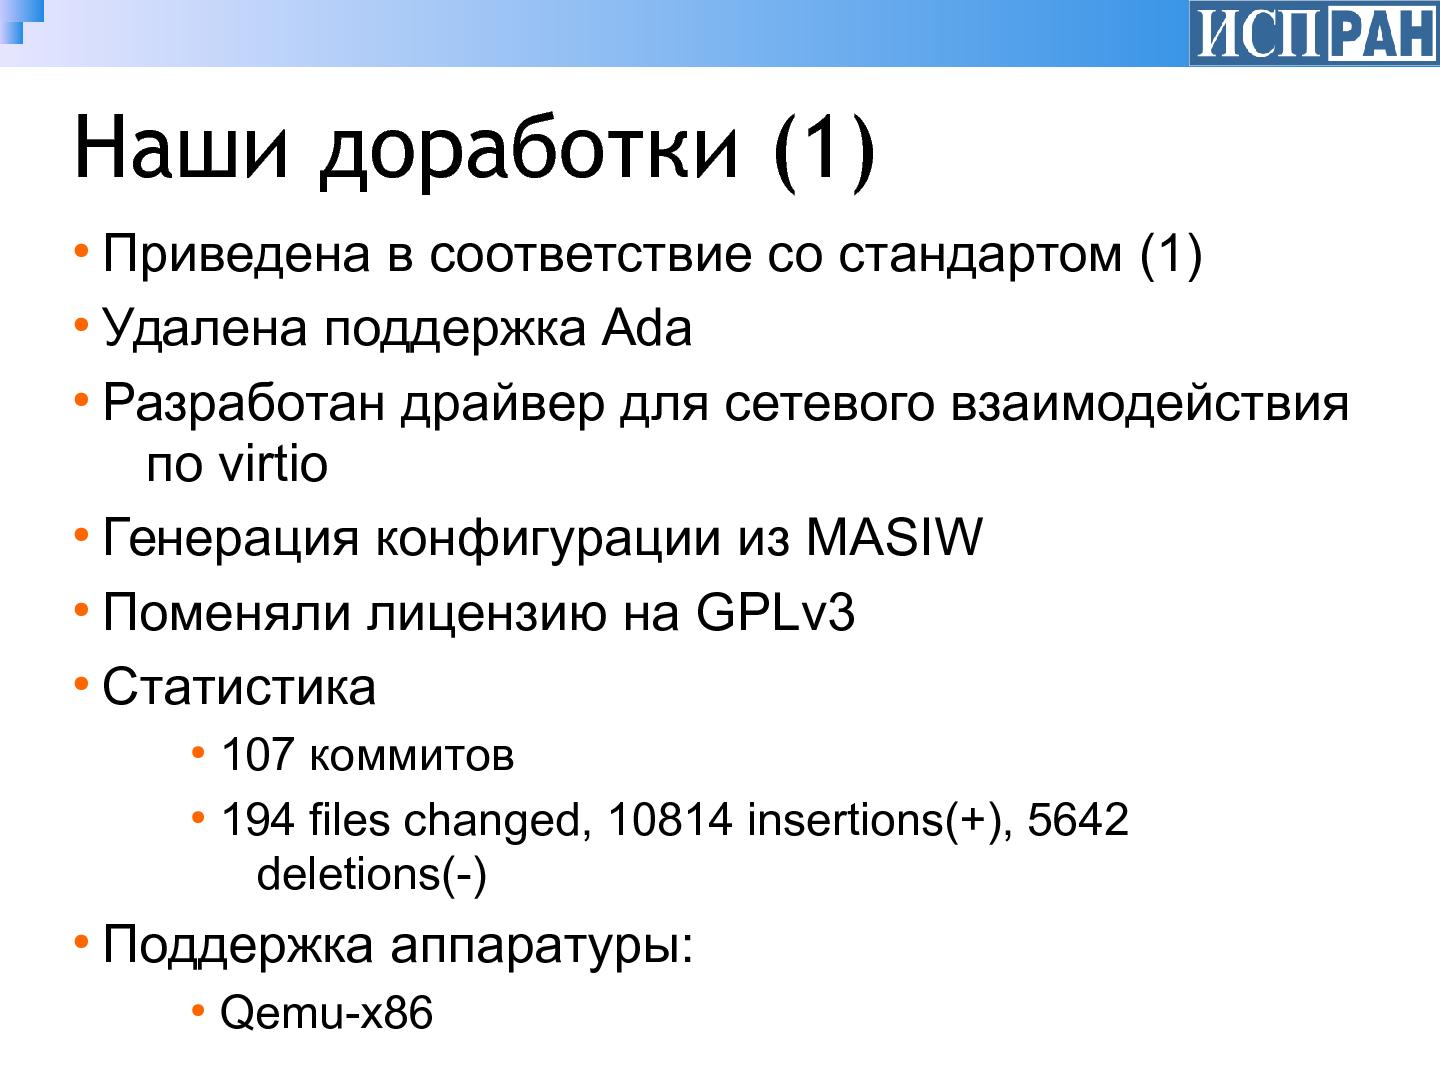 Файл:Свободная реализация ARINC-653-совместимой операционной системы реального времени (Алексей Хорошилов, OSSDEVCONF-2015).pdf